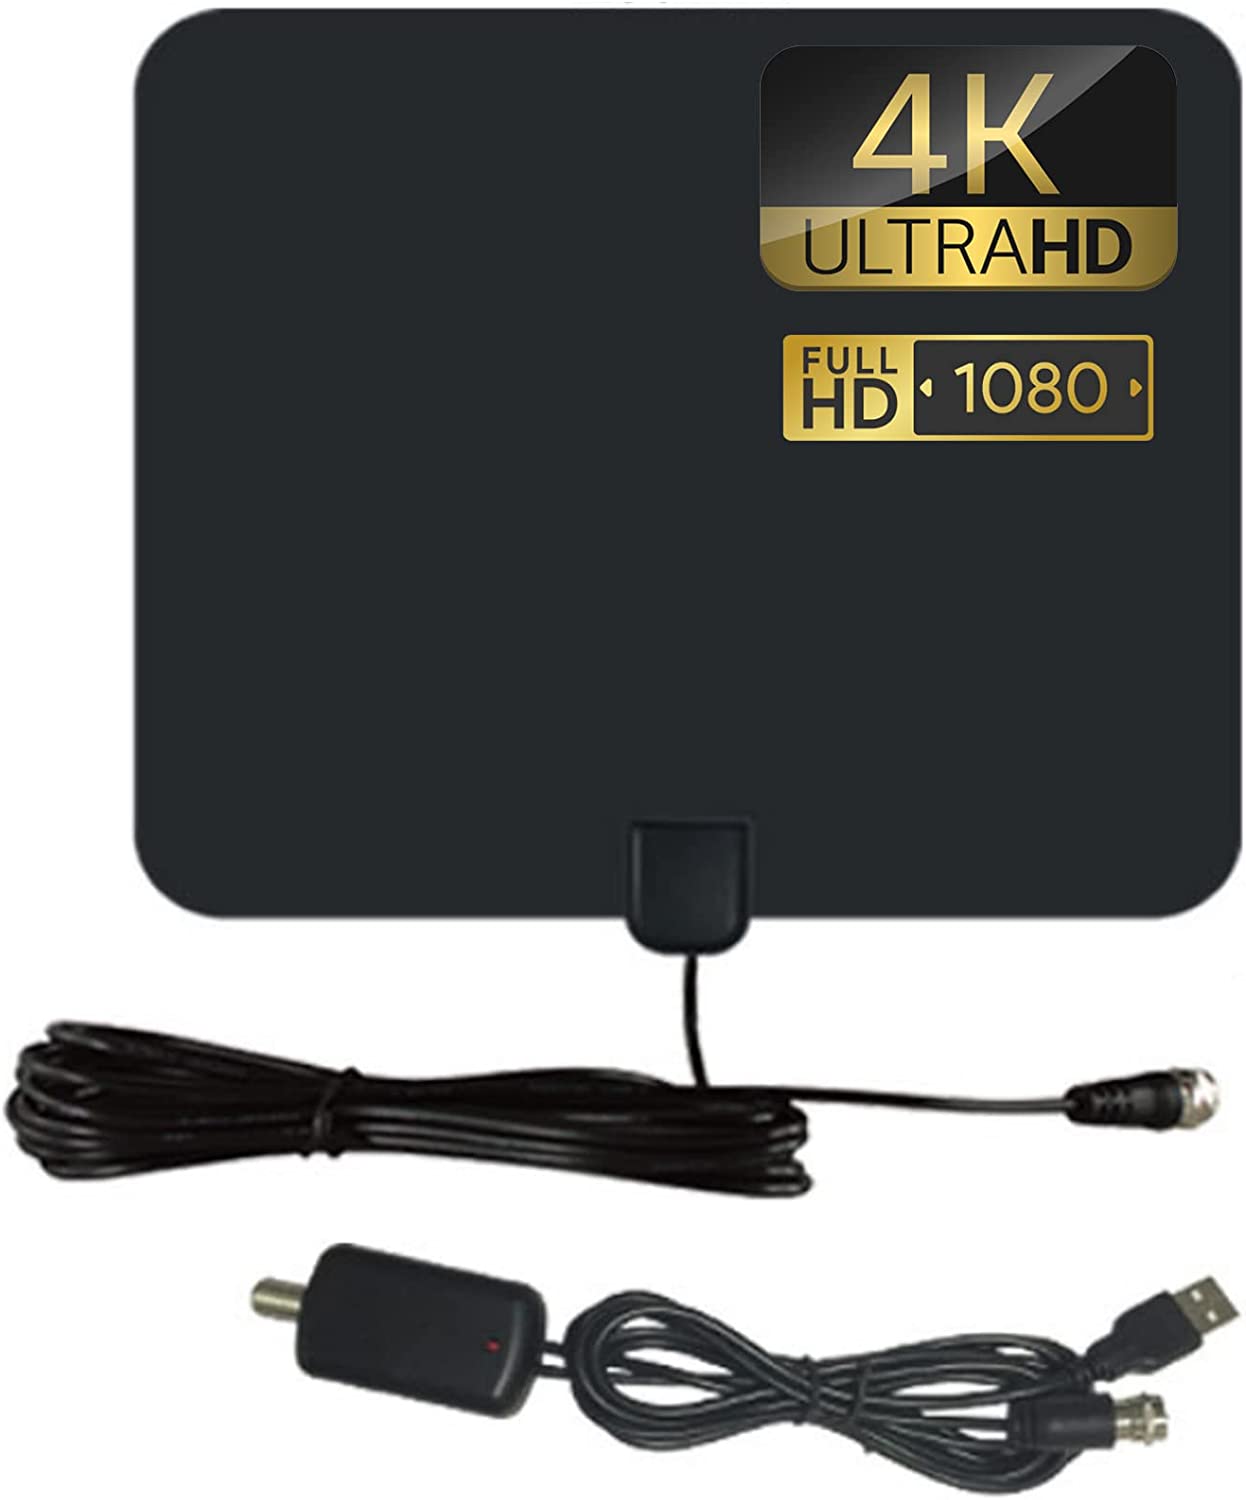 テレビアンテナ 室内アンテナ フラットデザインは薄くて軽量です360度受信範囲 方向性能が高い 4K HD画質 USBポートさまざまな数字地面DVB-T,ISDB-T,DMT-T H,ATSCとDAB FMRADIOS的HDTV互換性…